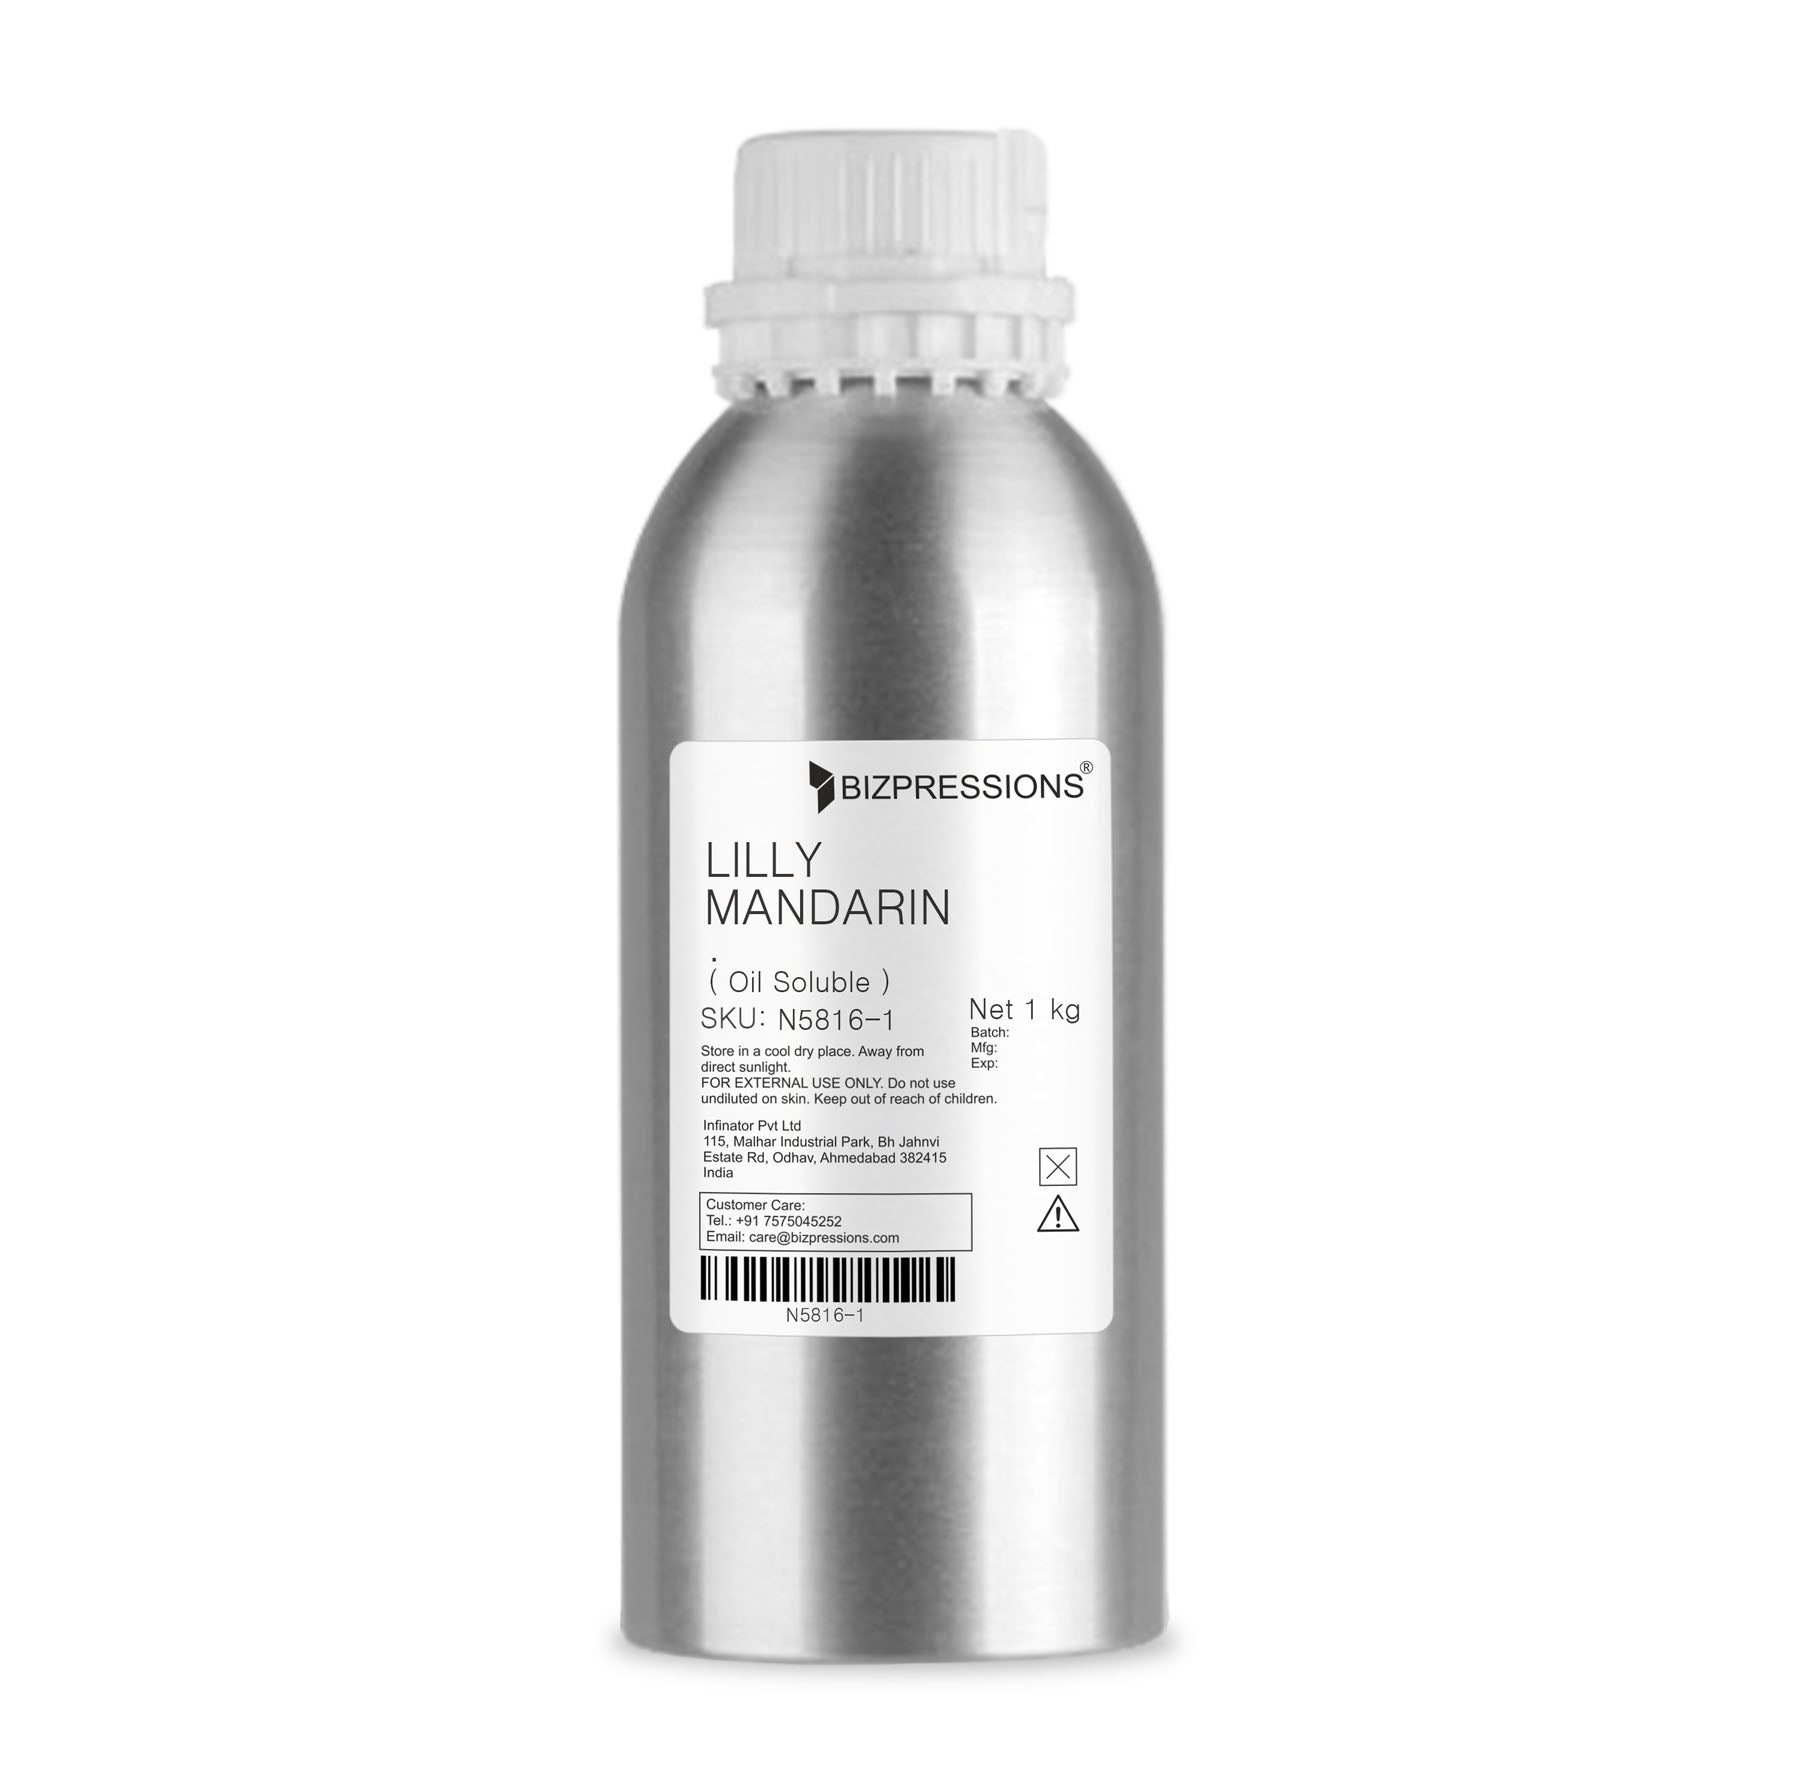 LILLY MANDARIN - Fragrance ( Oil Soluble ) - 1 kg